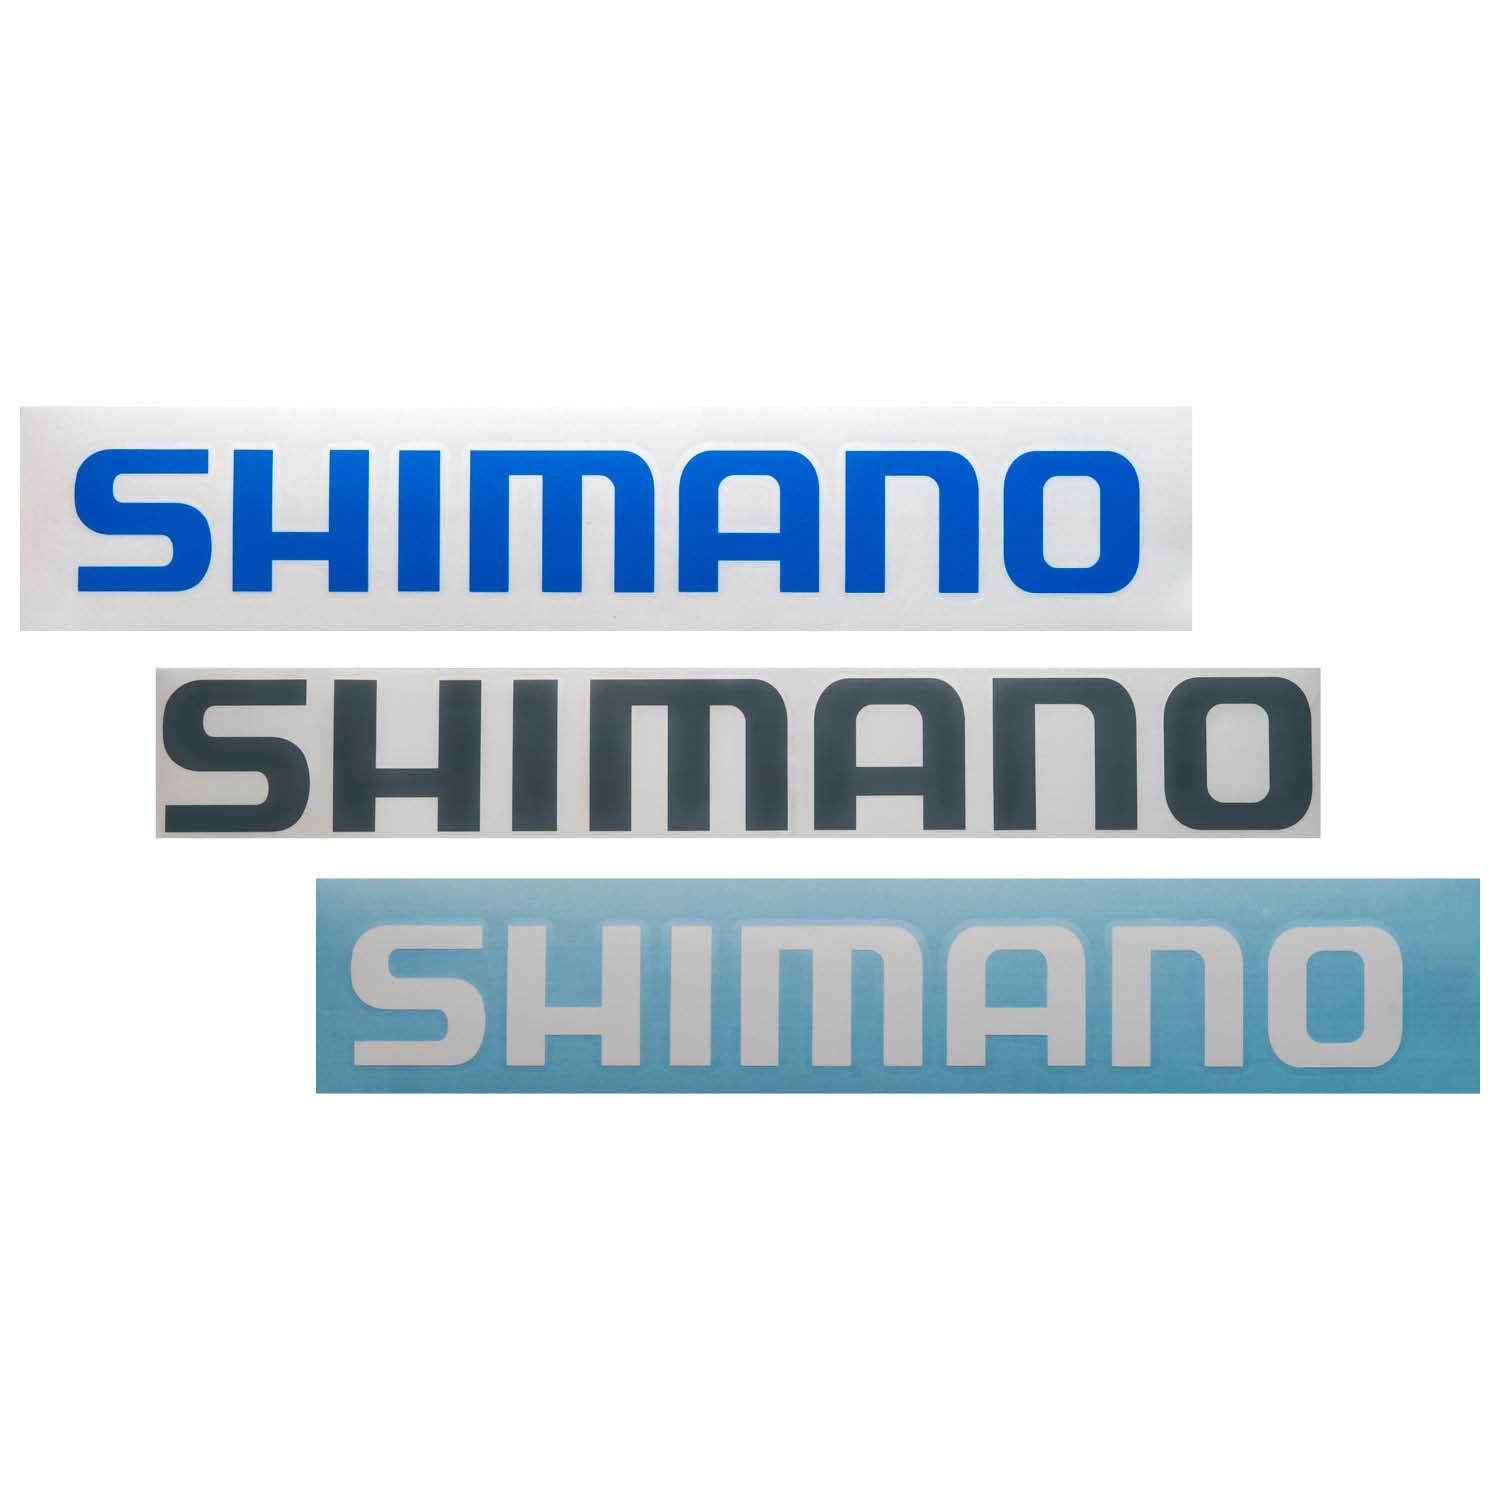 Shimano - Decals